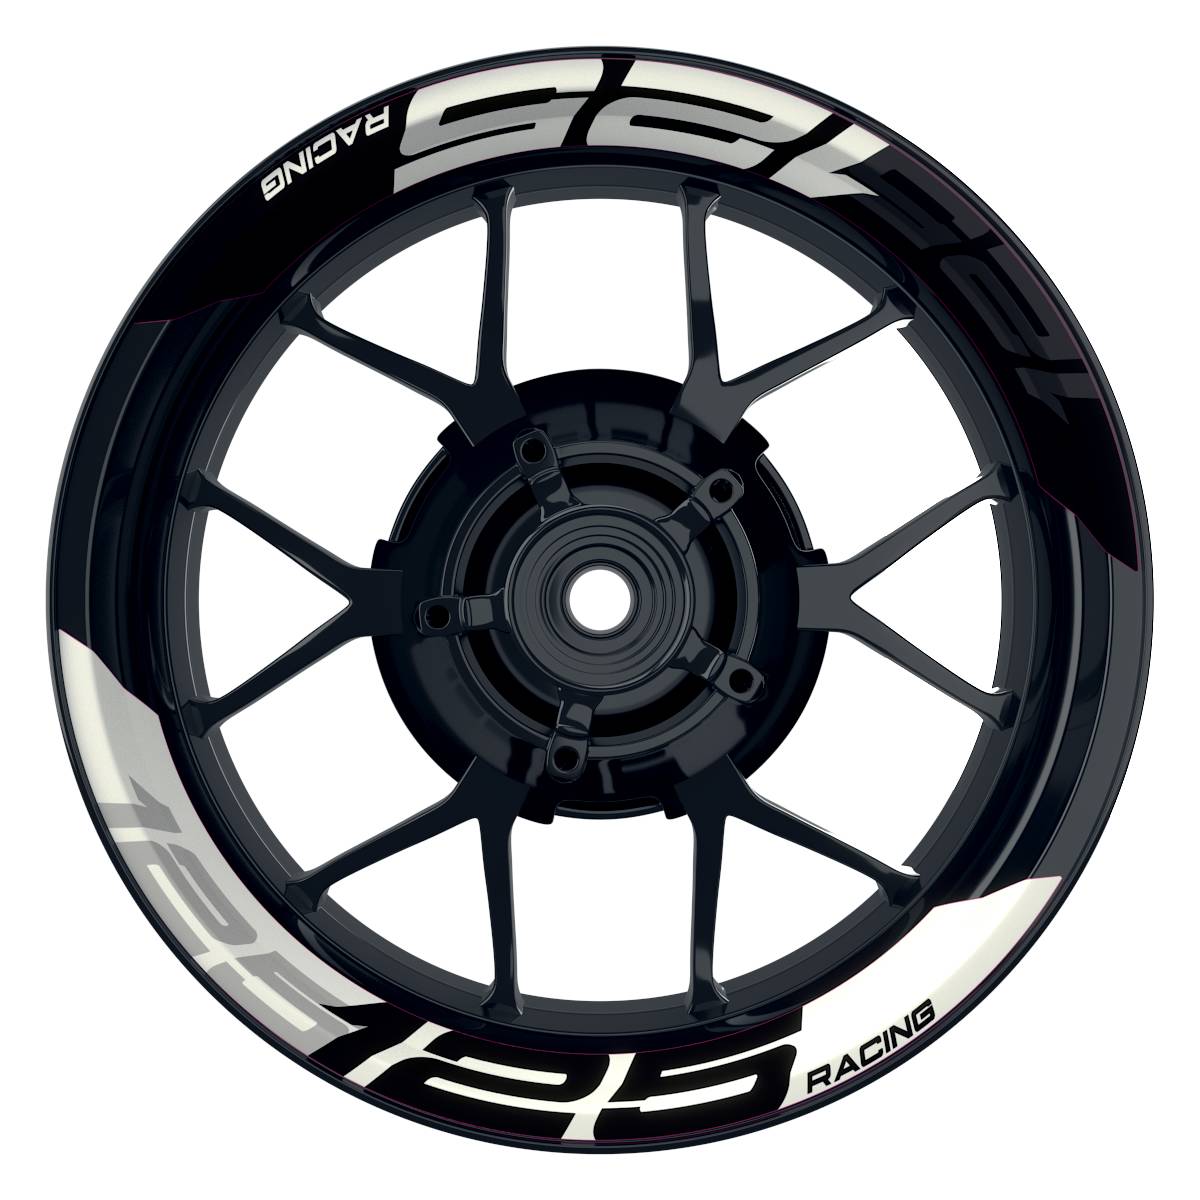 Wheelsticker Felgenaufkleber KTM Racing 125 halb halb V2 schwarz weiss Frontansicht